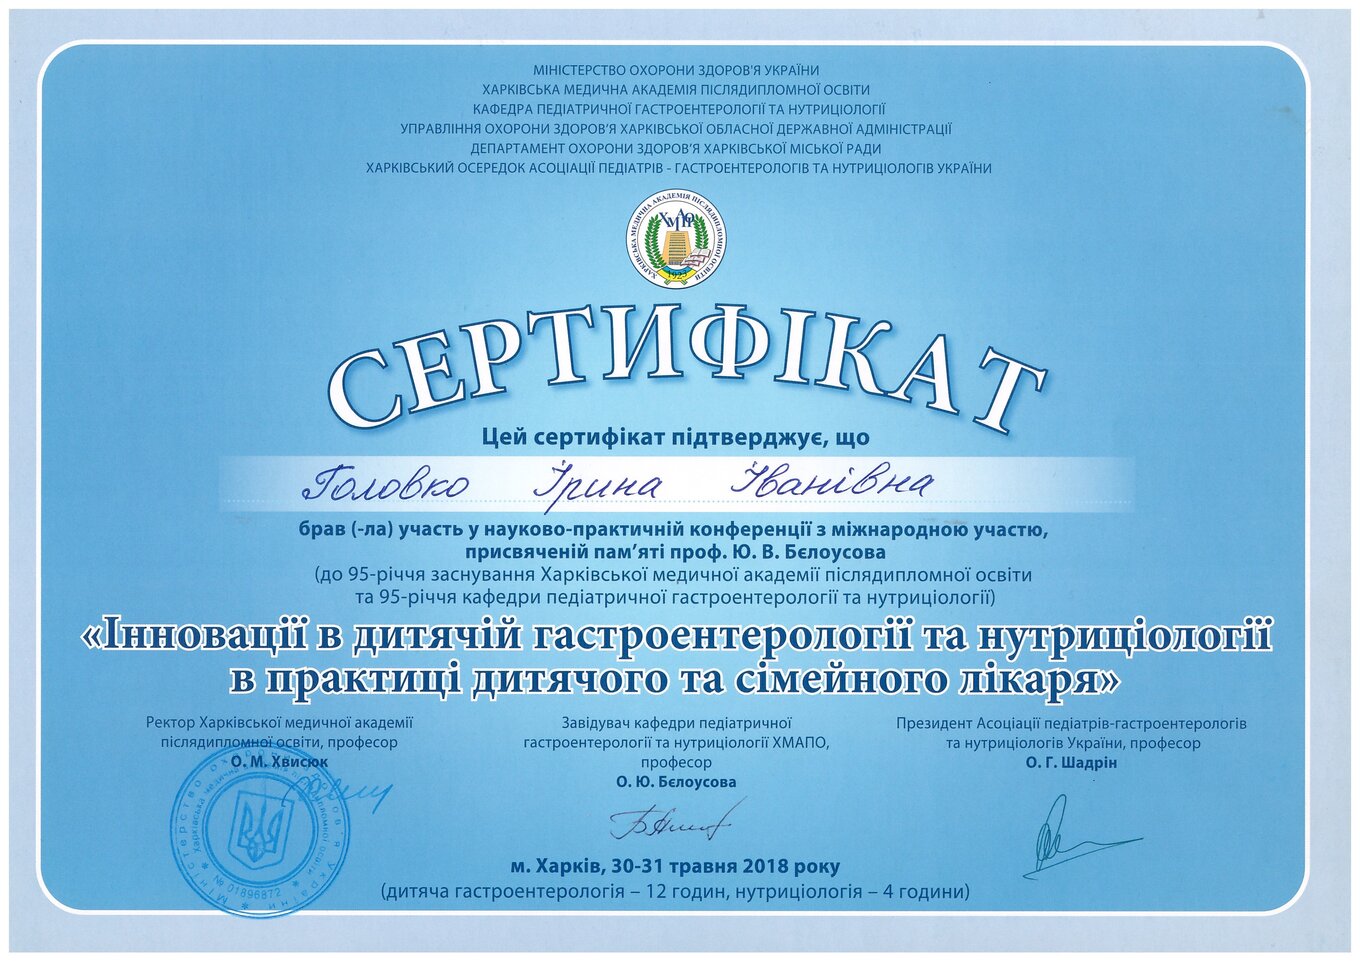 Golovko Irina Ivanivna sertifikat10